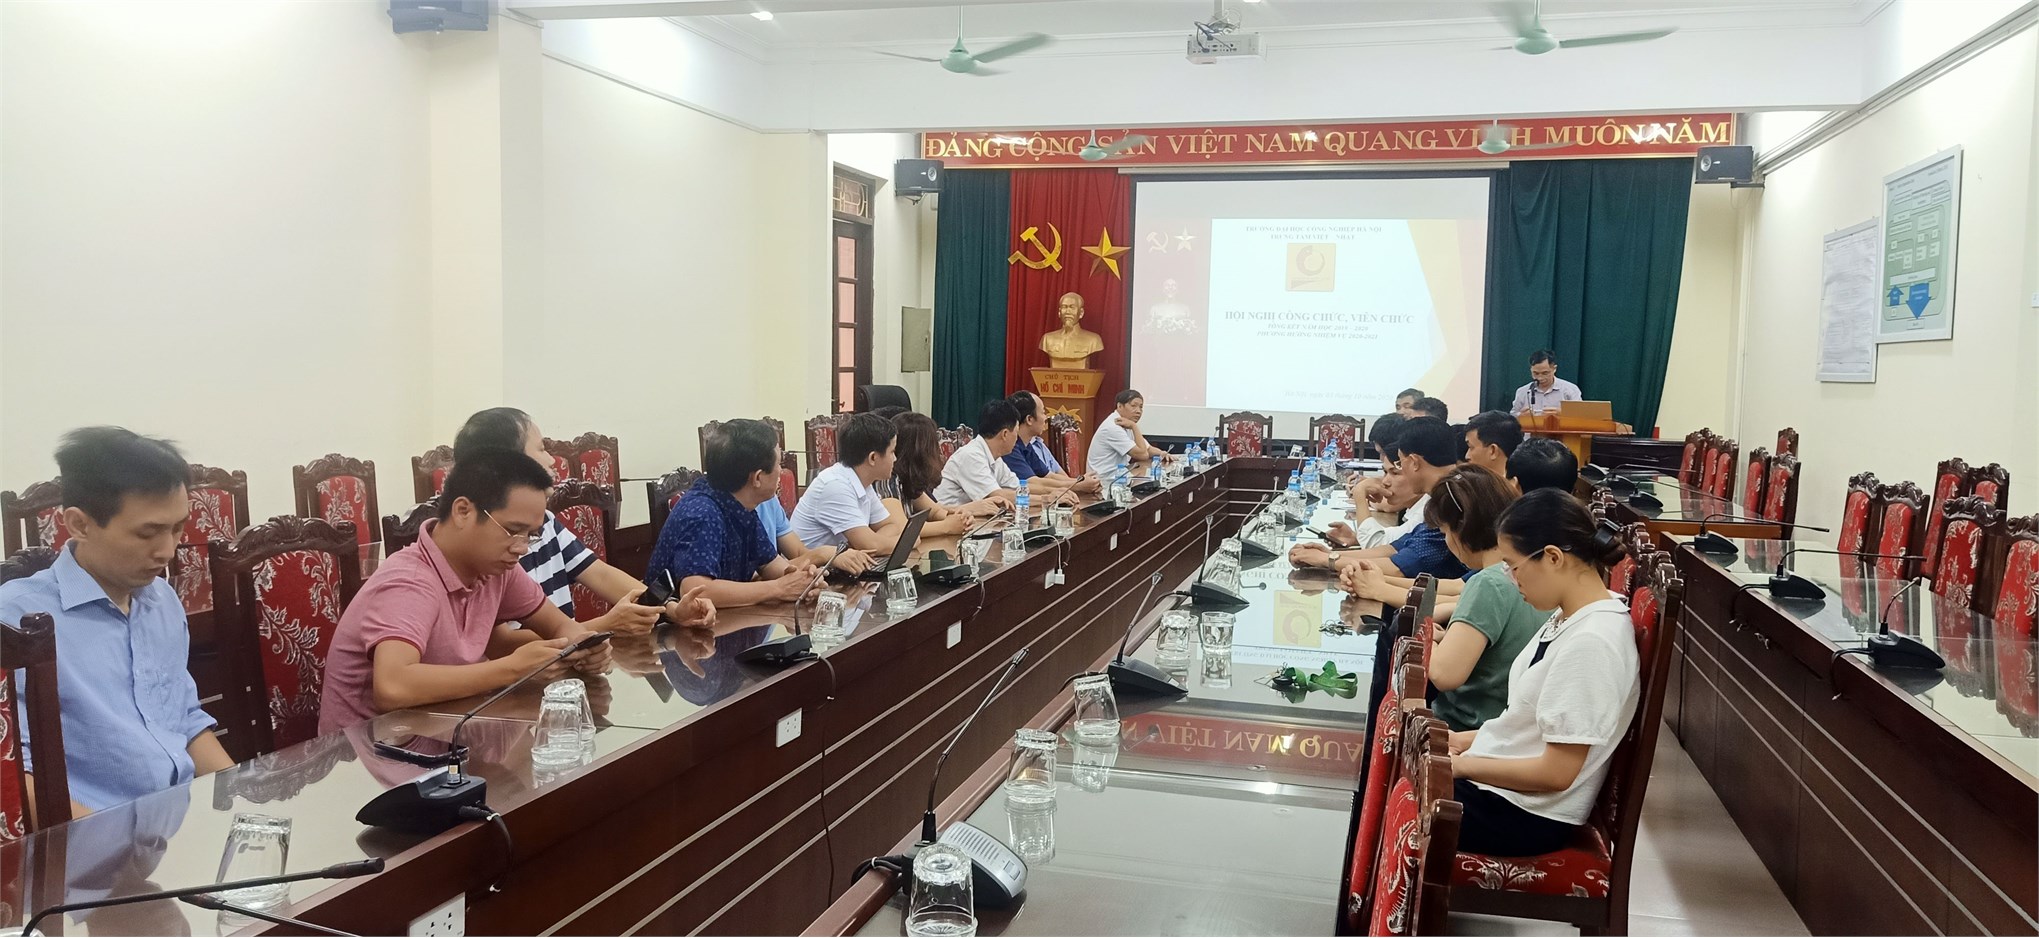 Hội nghị công chức viên chức năm học 2019 - 2020 của TT Việt Nhật